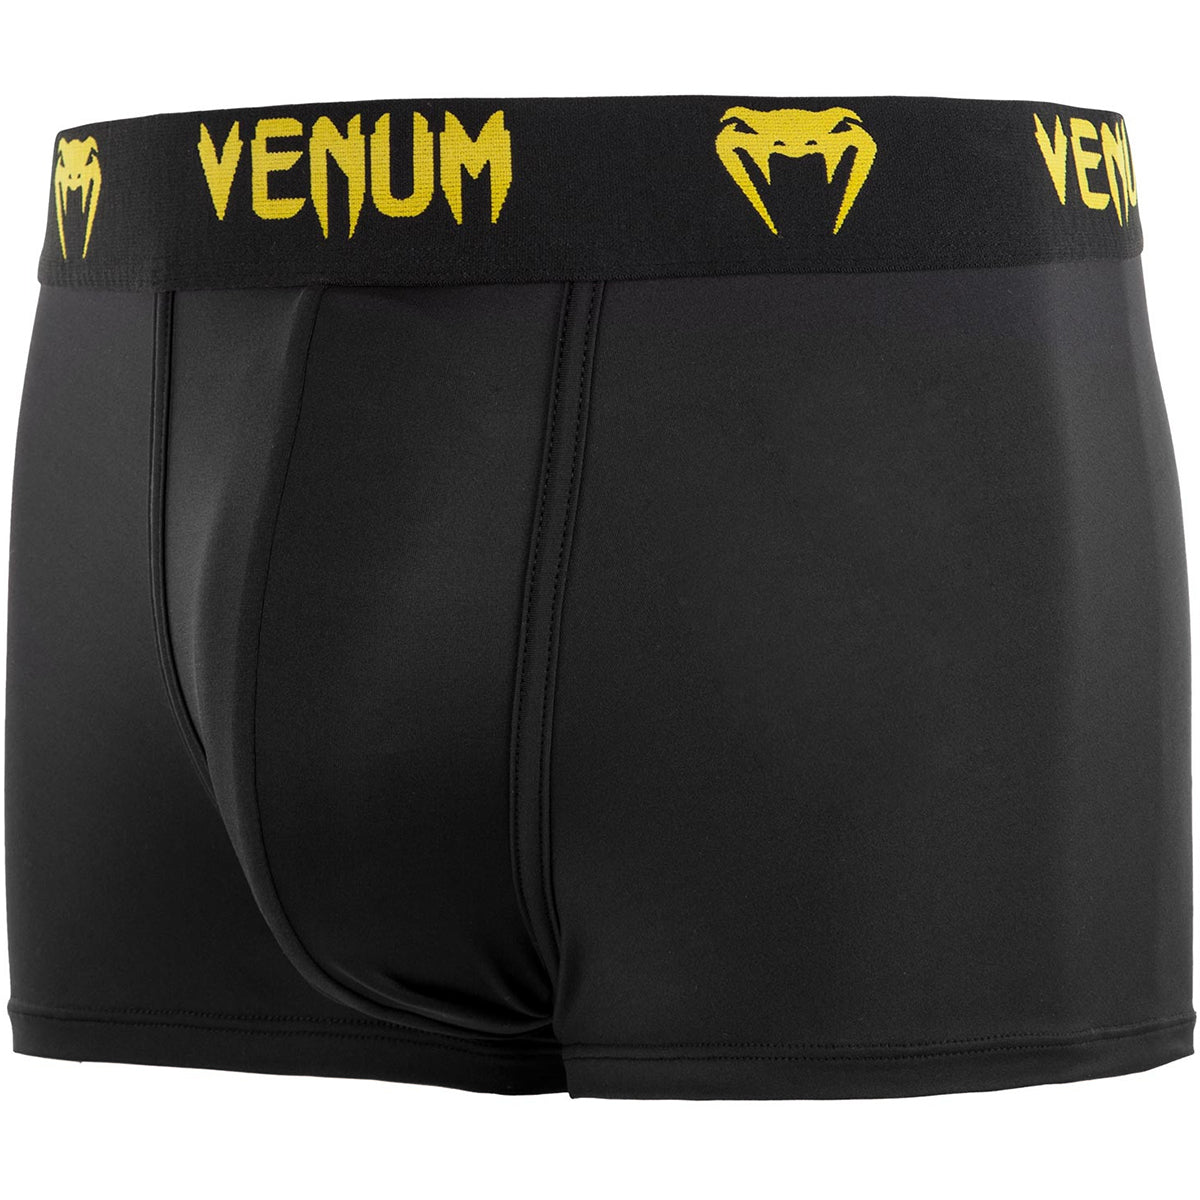 Venum Classic Boxer Shorts - Black/Yellow Venum